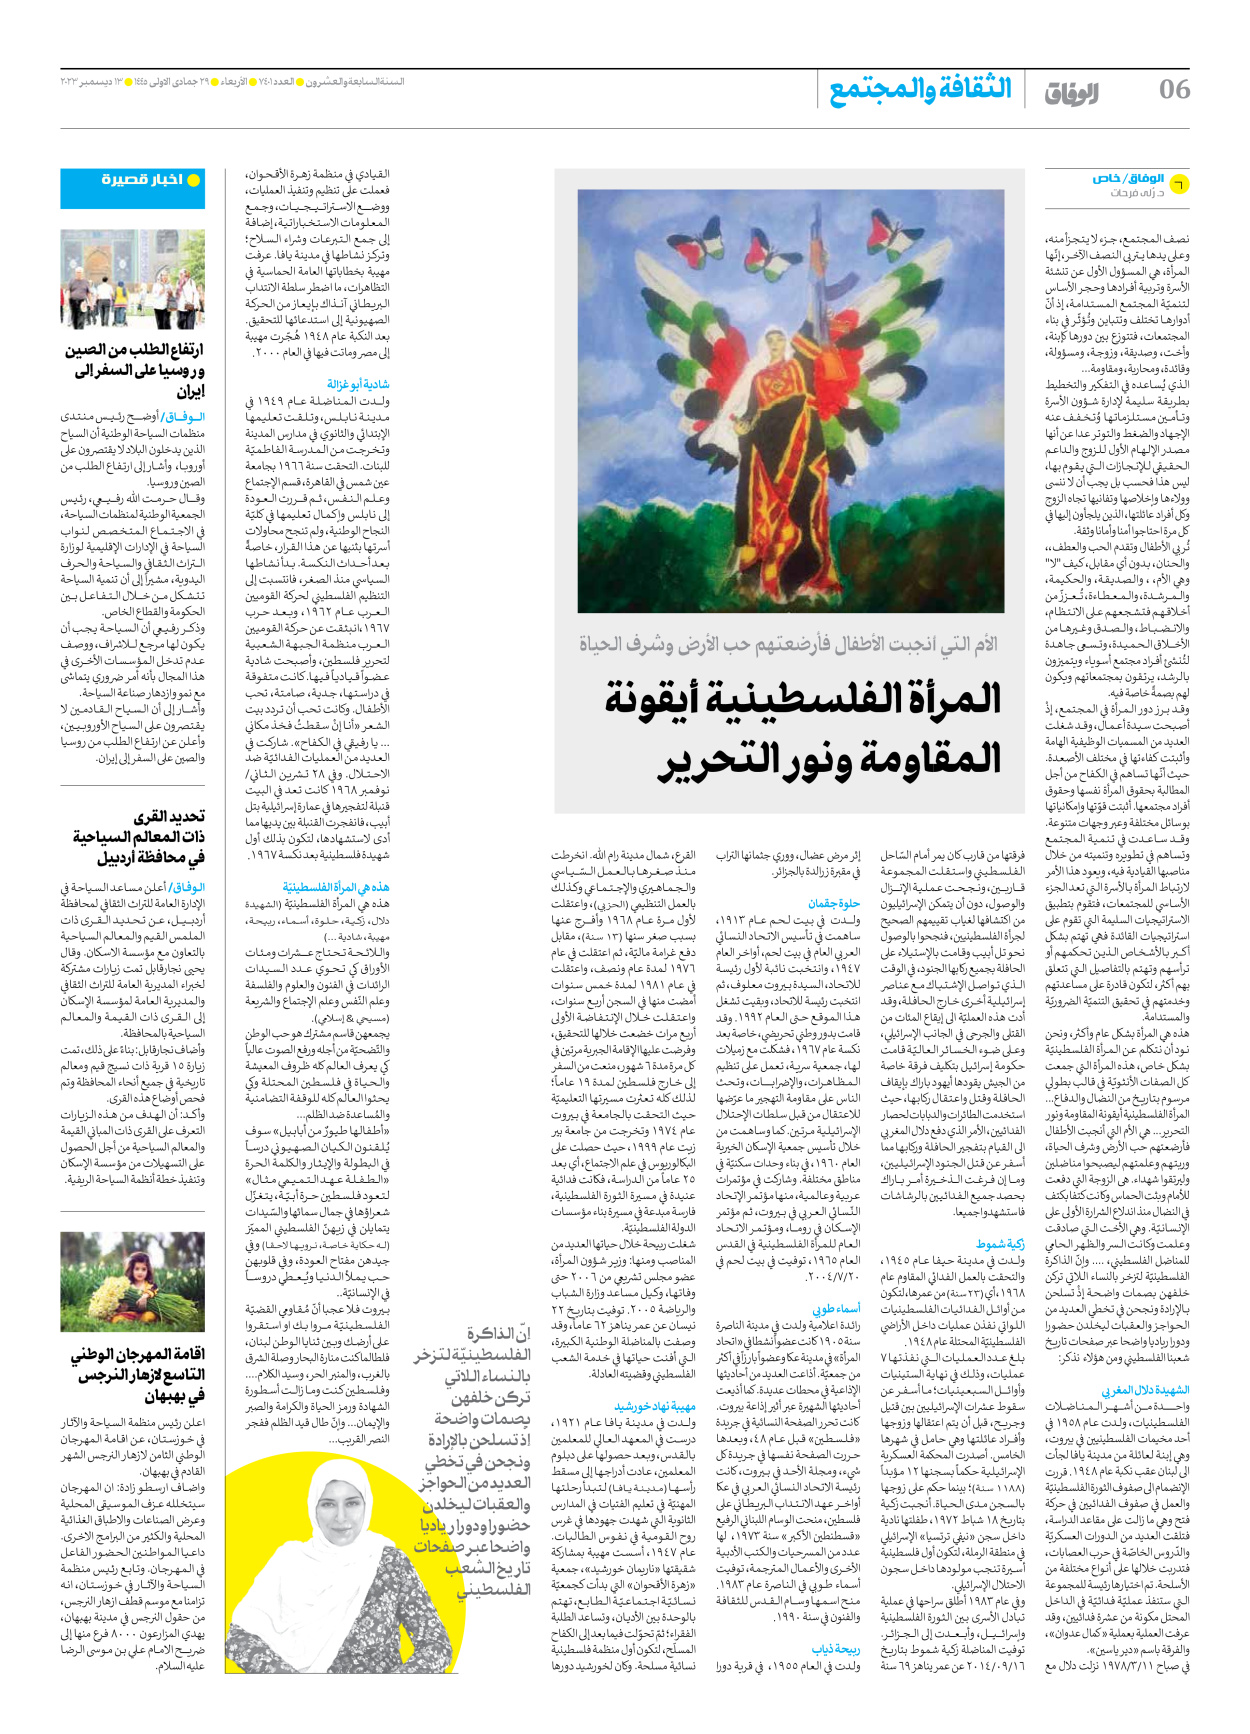 صحیفة ایران الدولیة الوفاق - العدد سبعة آلاف وأربعمائة وواحد - ١٣ ديسمبر ٢٠٢٣ - الصفحة ٦